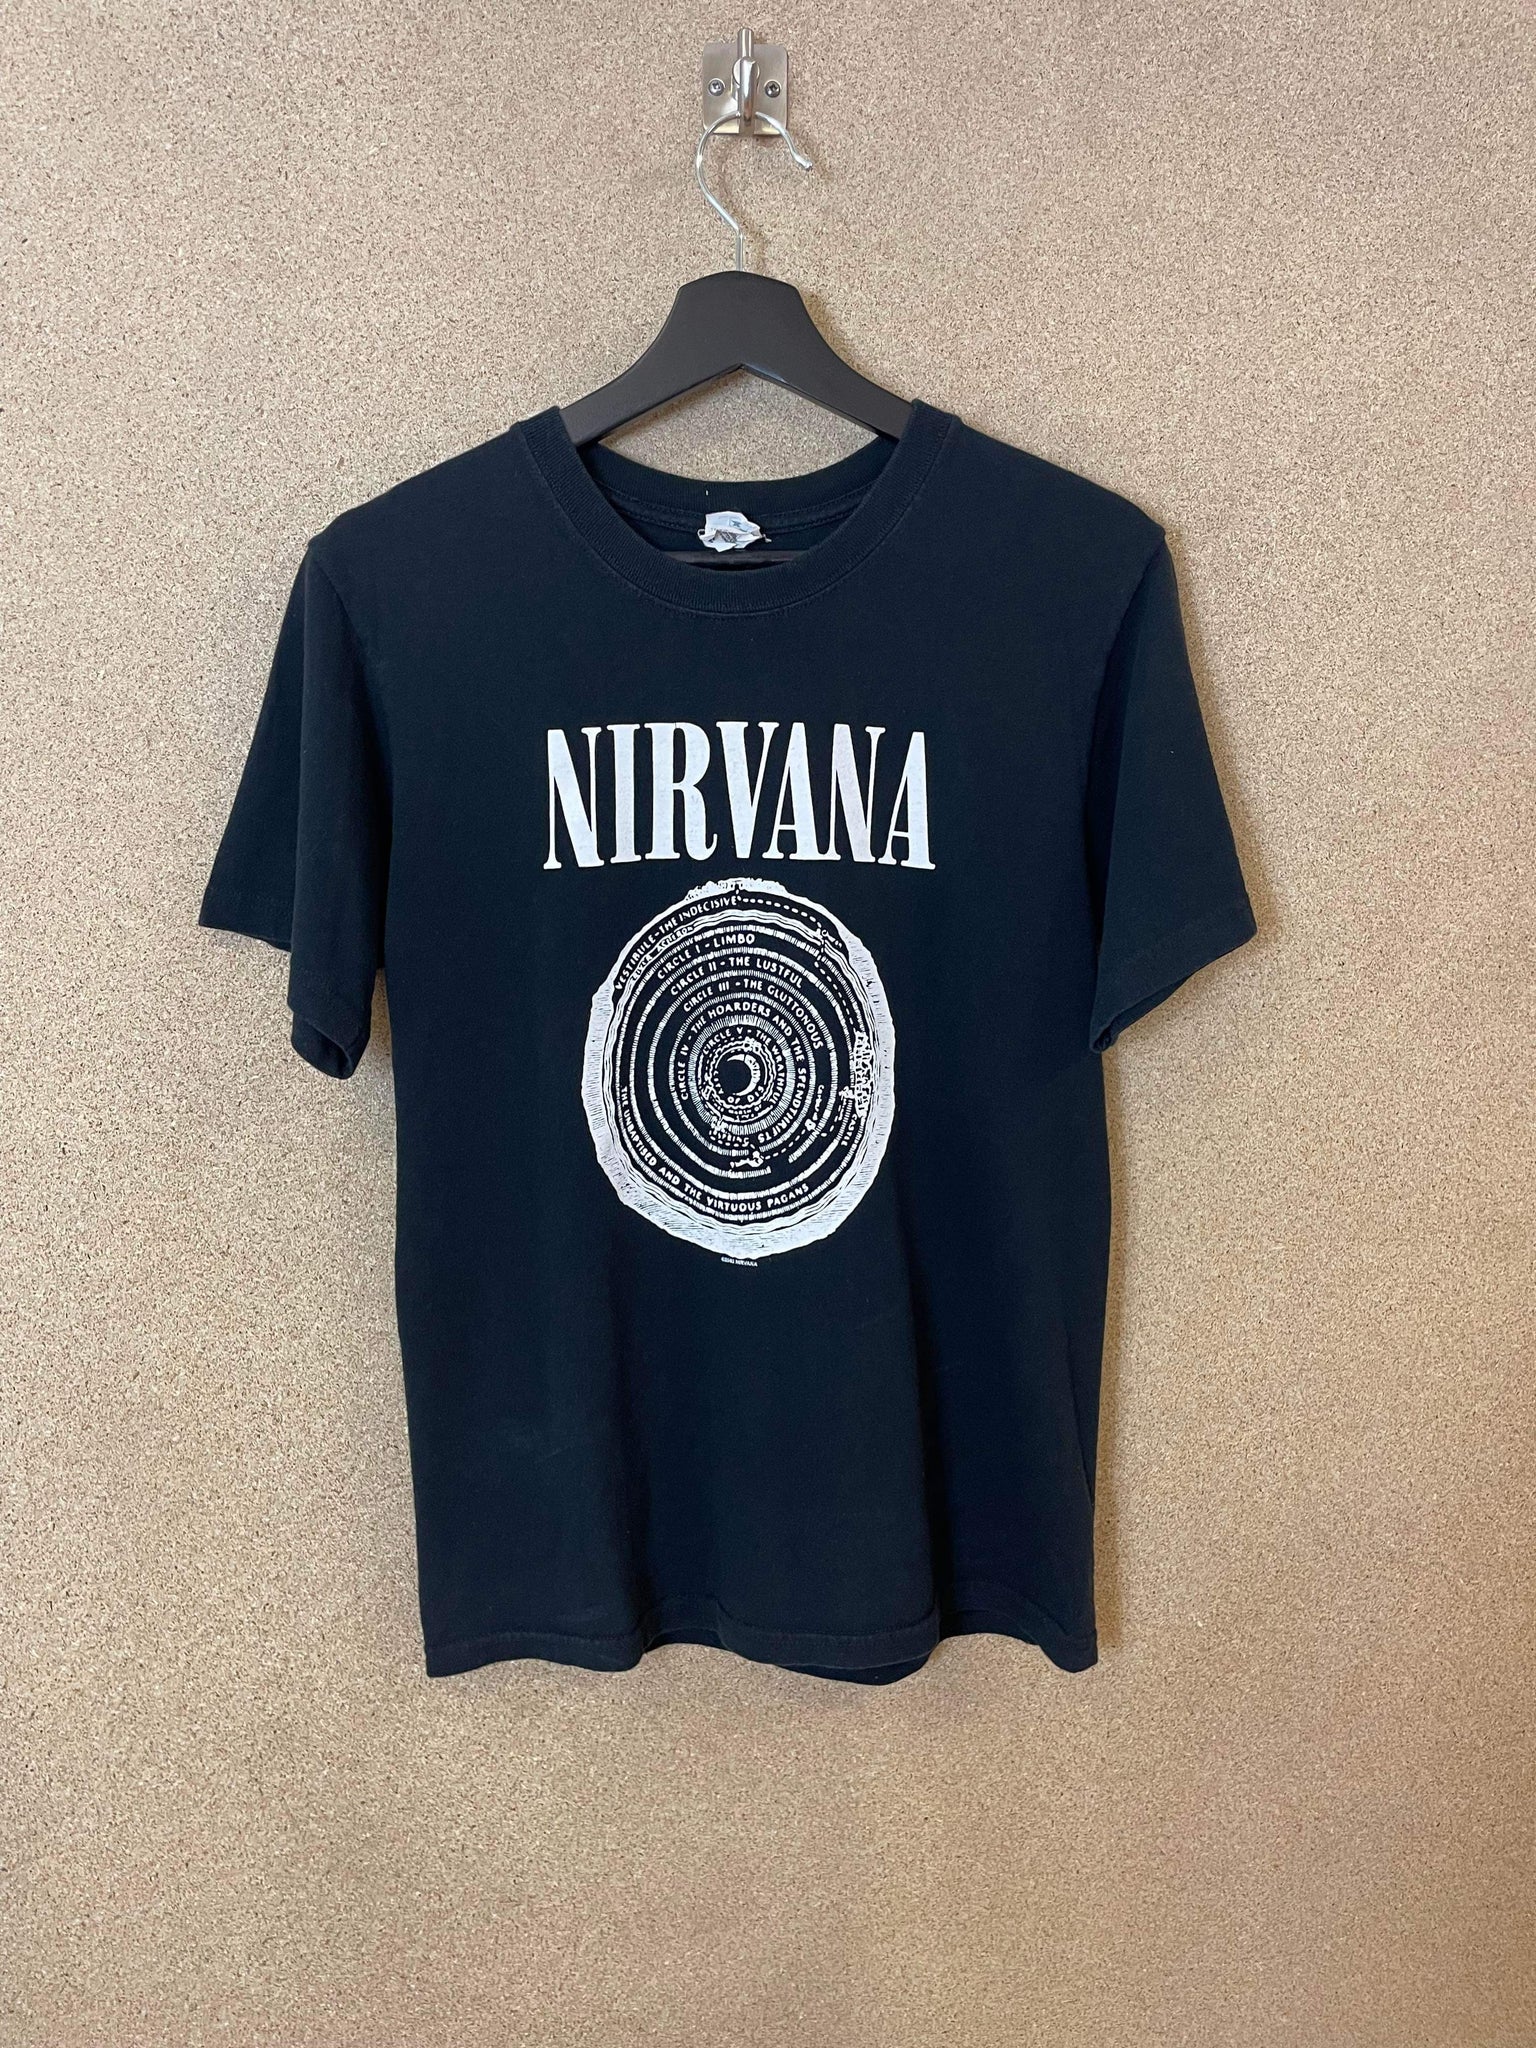 Vintage Nirvana Vestibule 2003 Tee - S